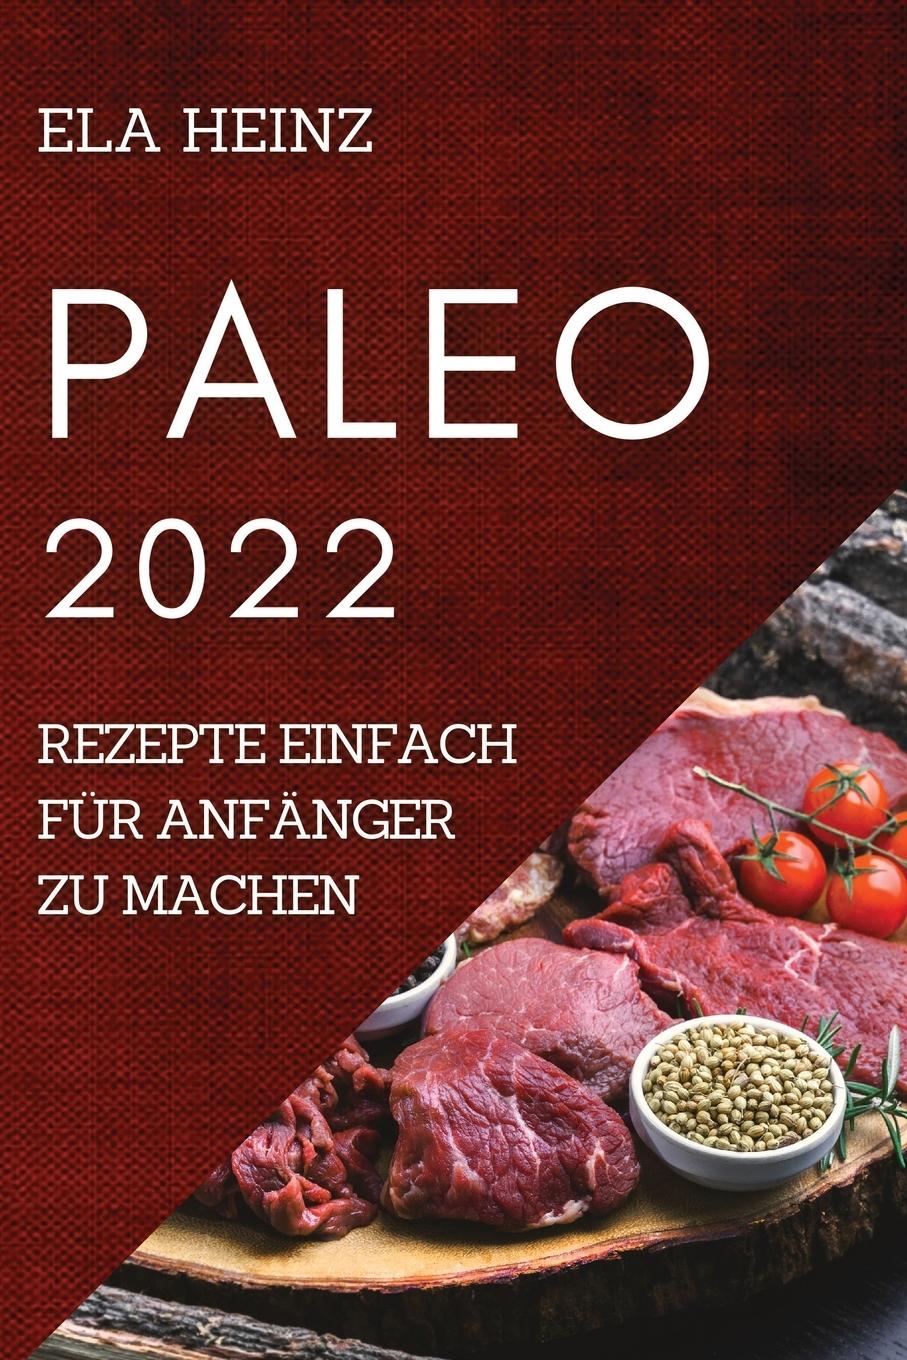 Carte Paleo 2022 